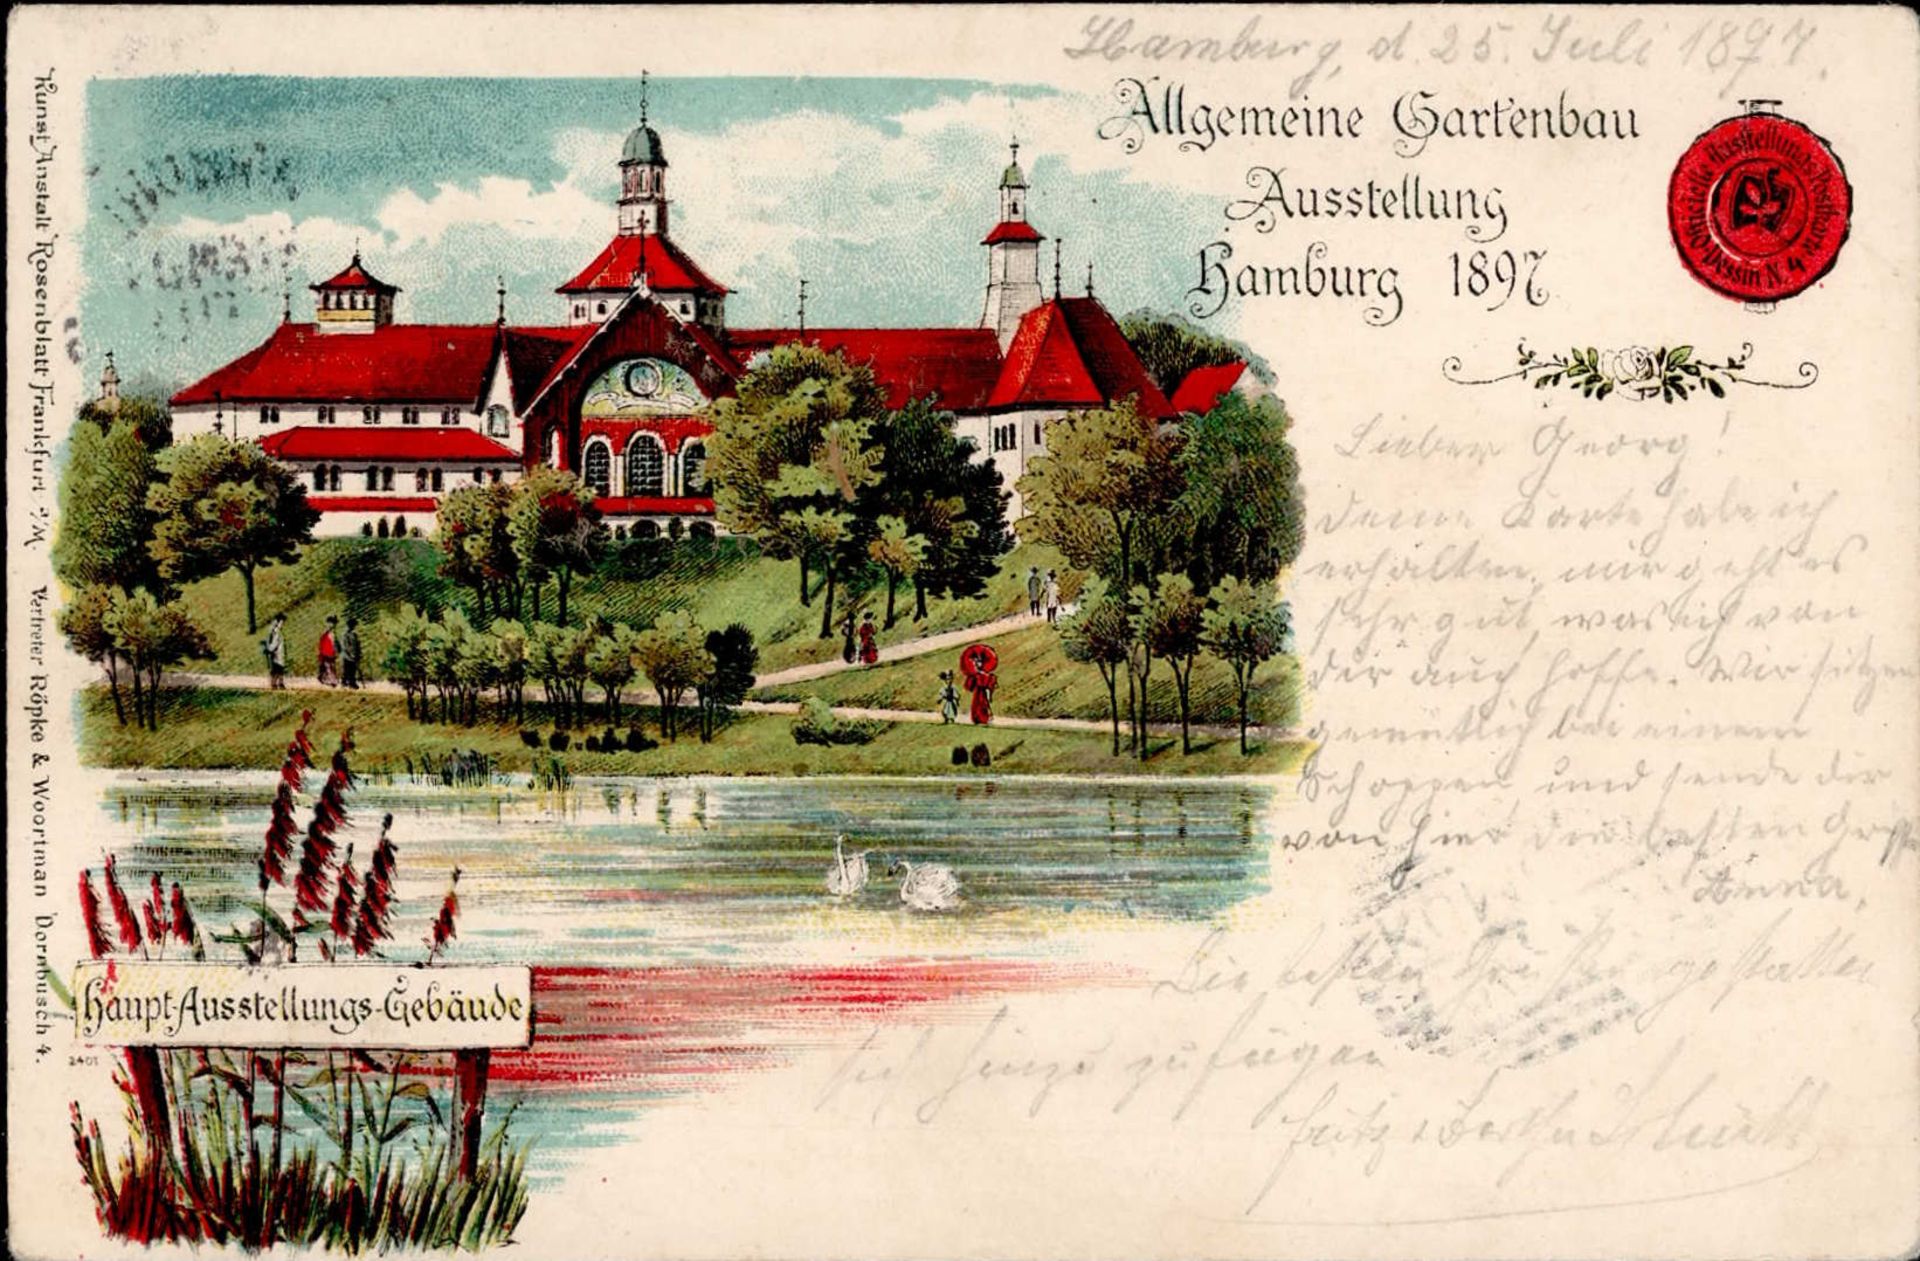 Landwirtschaft - GARTENBAU-AUSSTELLUNG HAMBURG 1897 mit S-o I